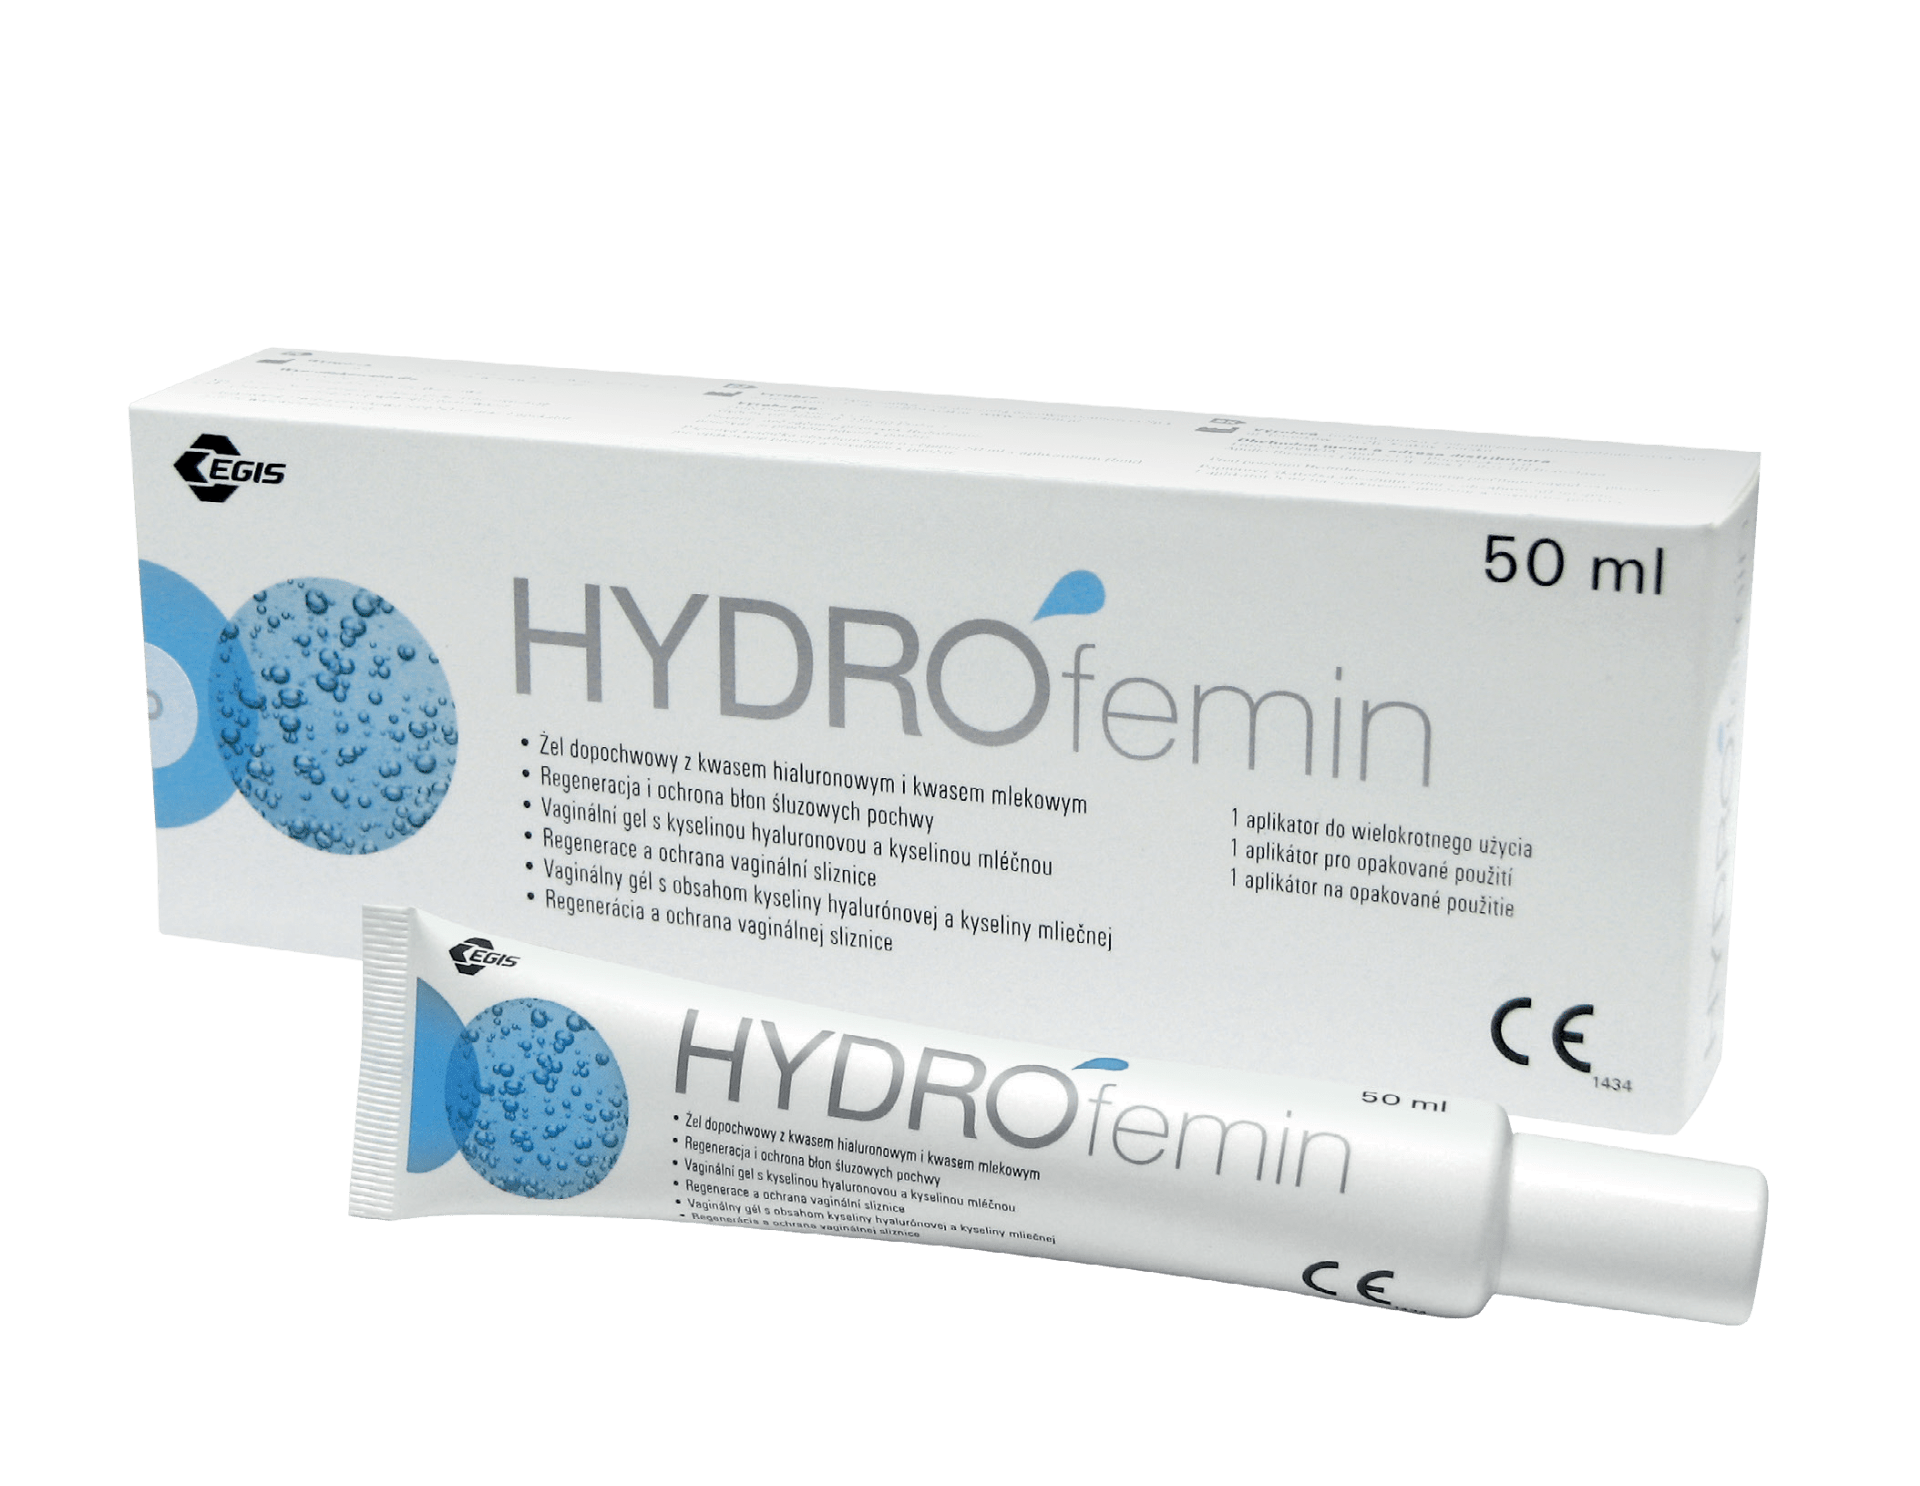 HYDROfemin je volně dostupný zdravotnický prostředek...